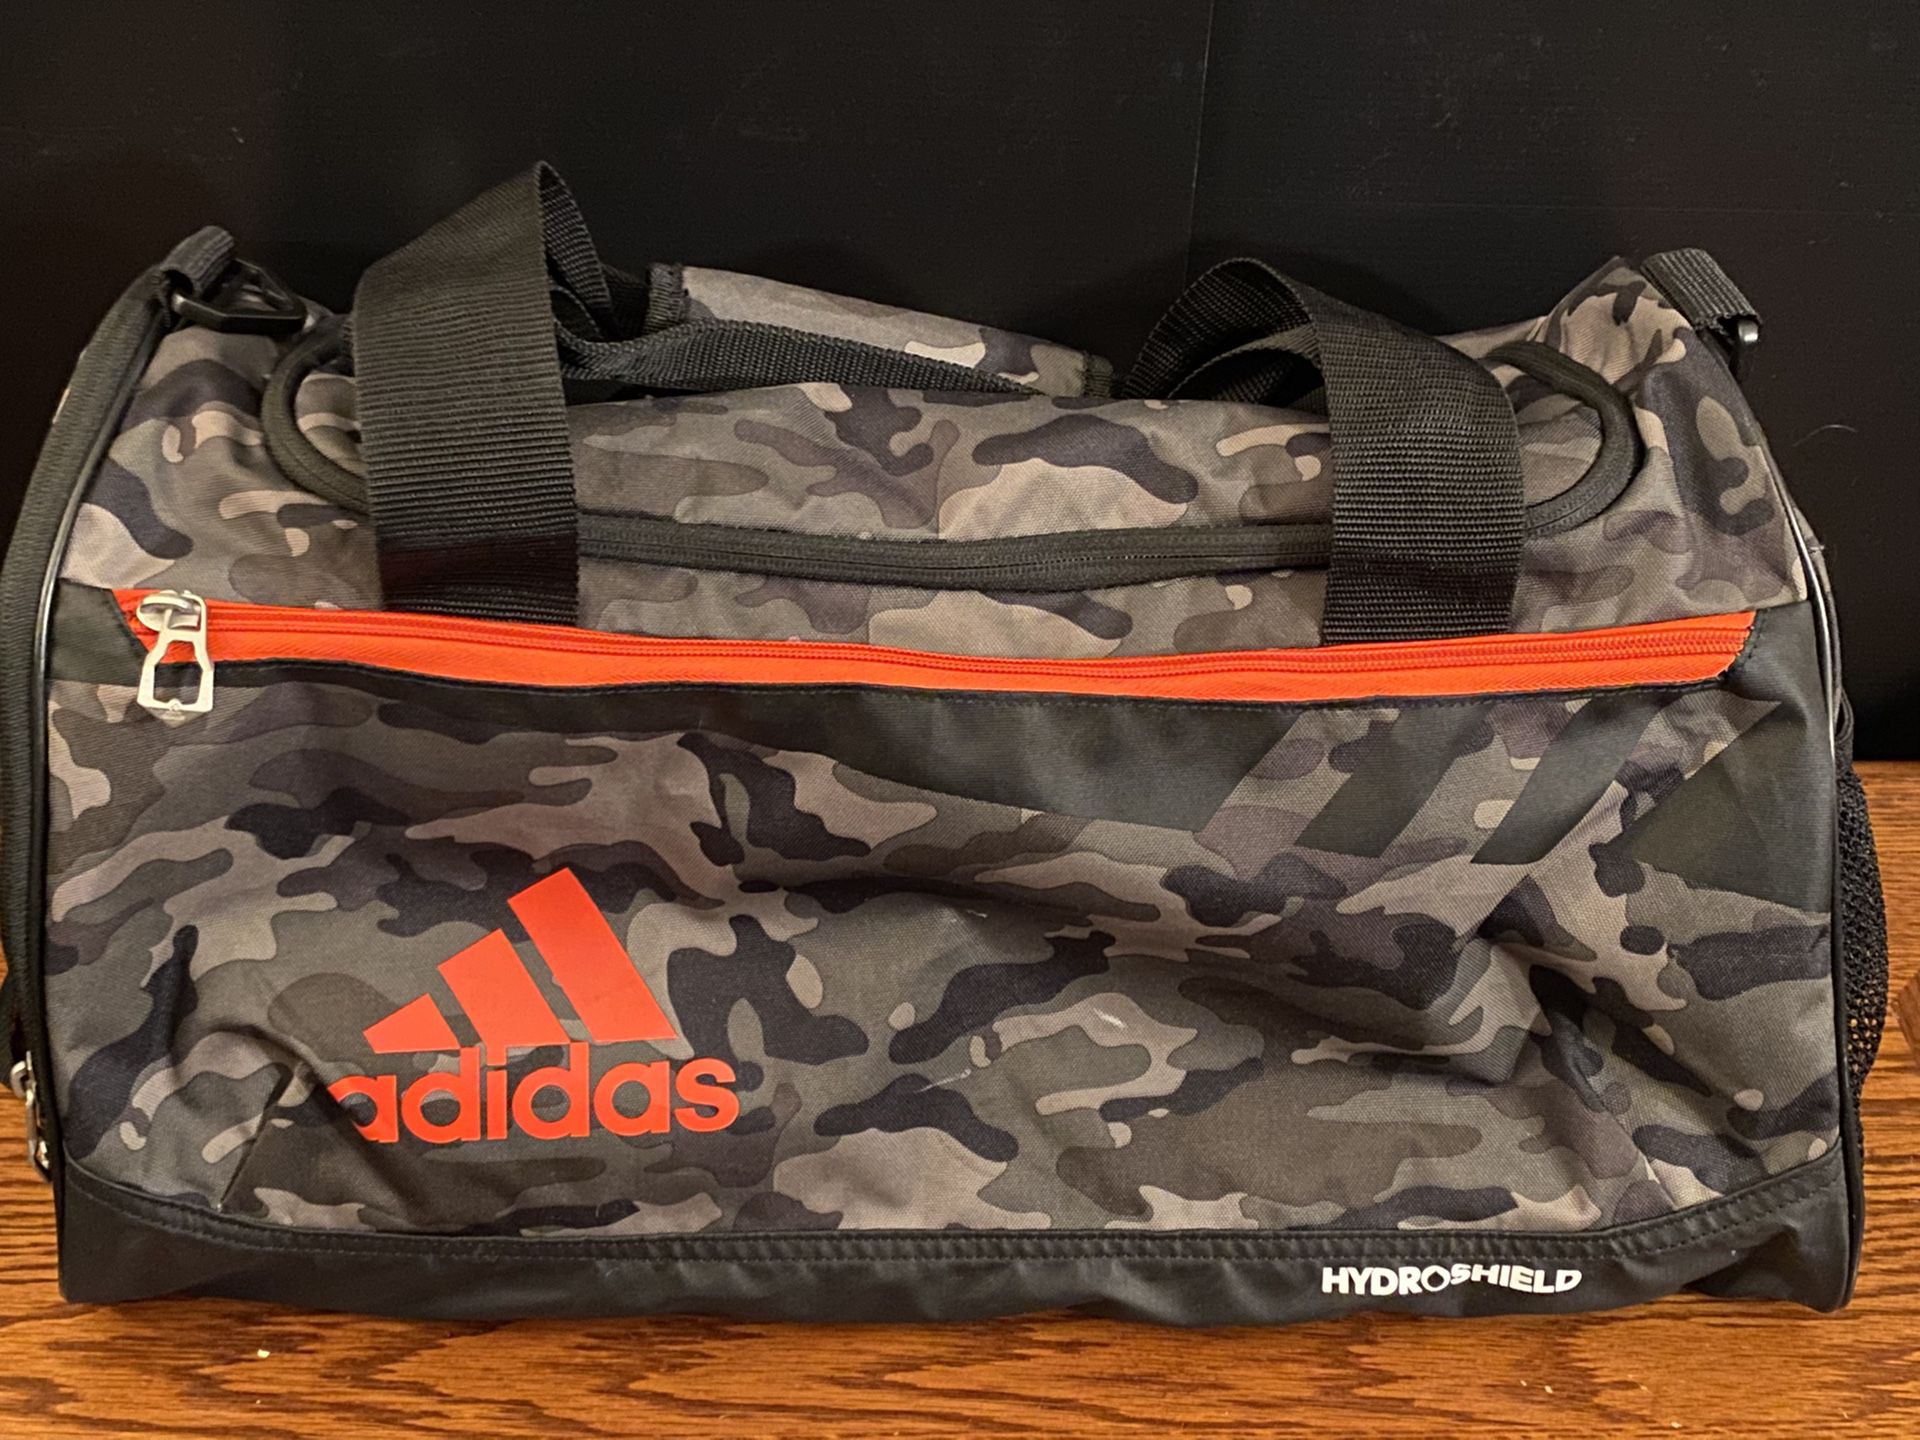 Adidas Hydroshield duffle bag